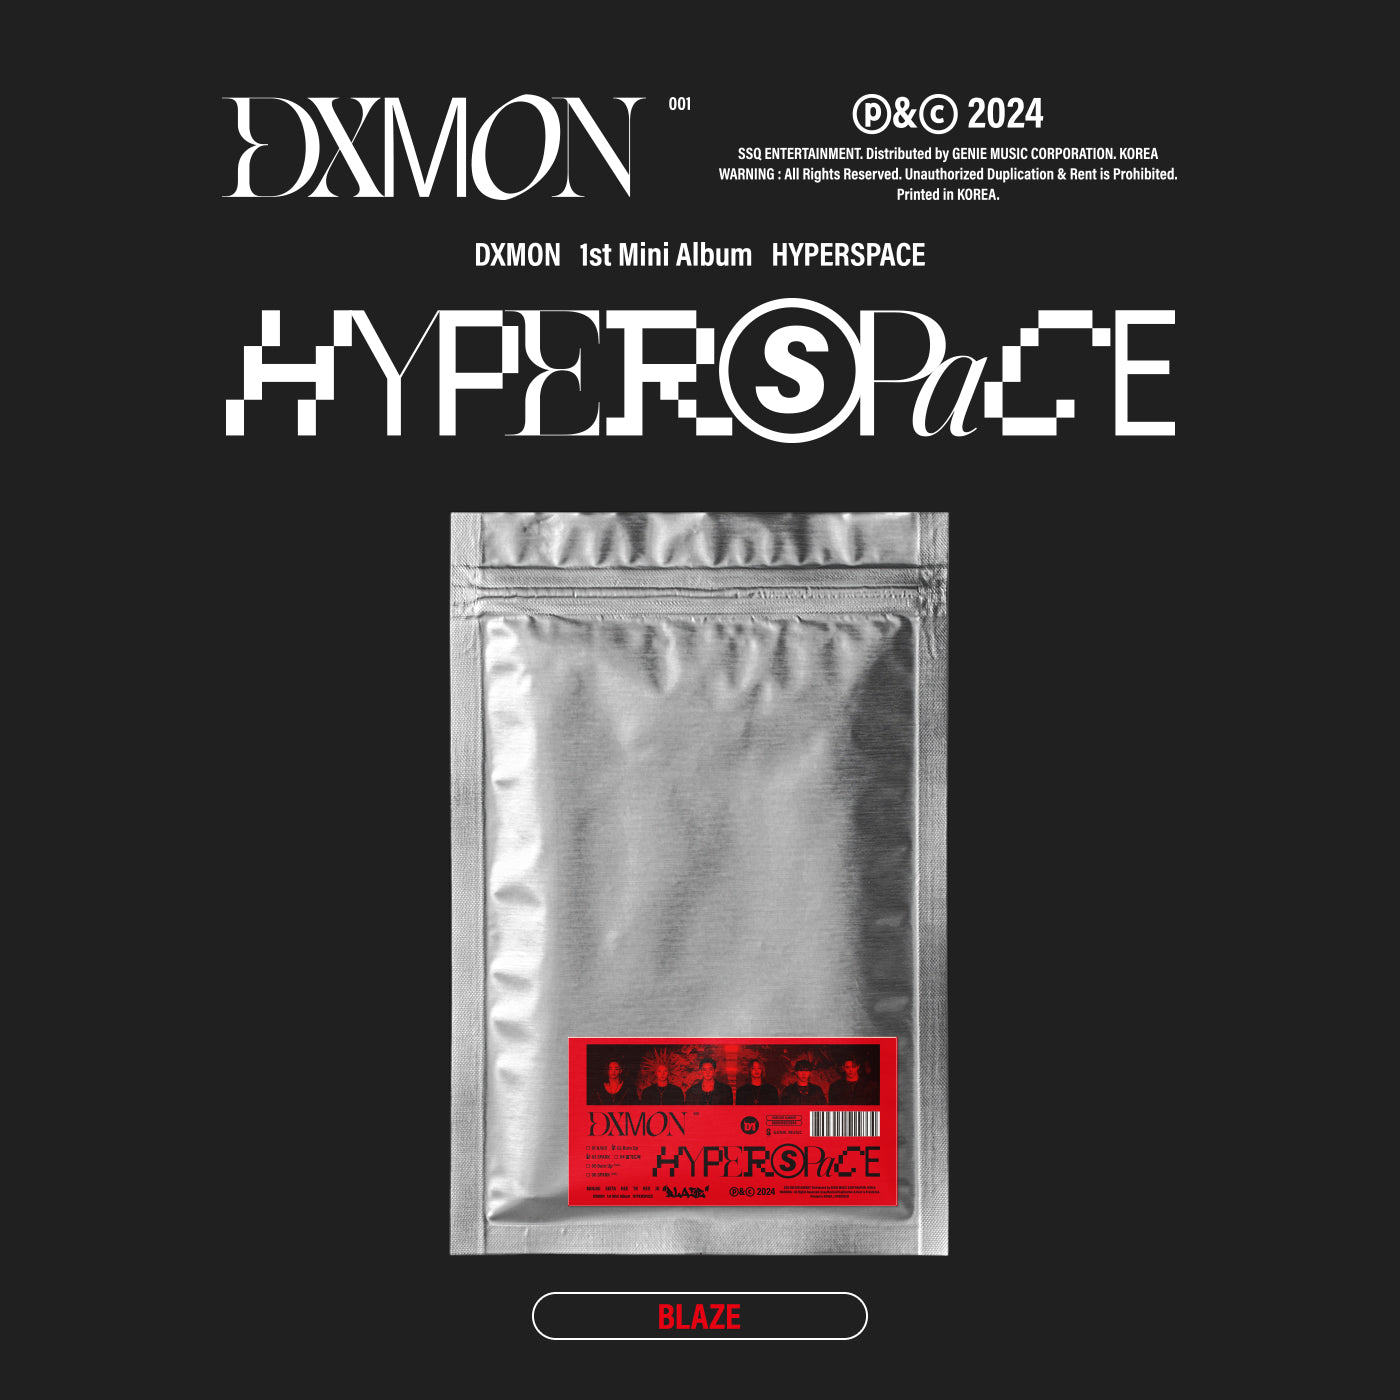 DXMON 1ST MINI ALBUM 'HYPERSPACE' BLAZE VERSION COVER